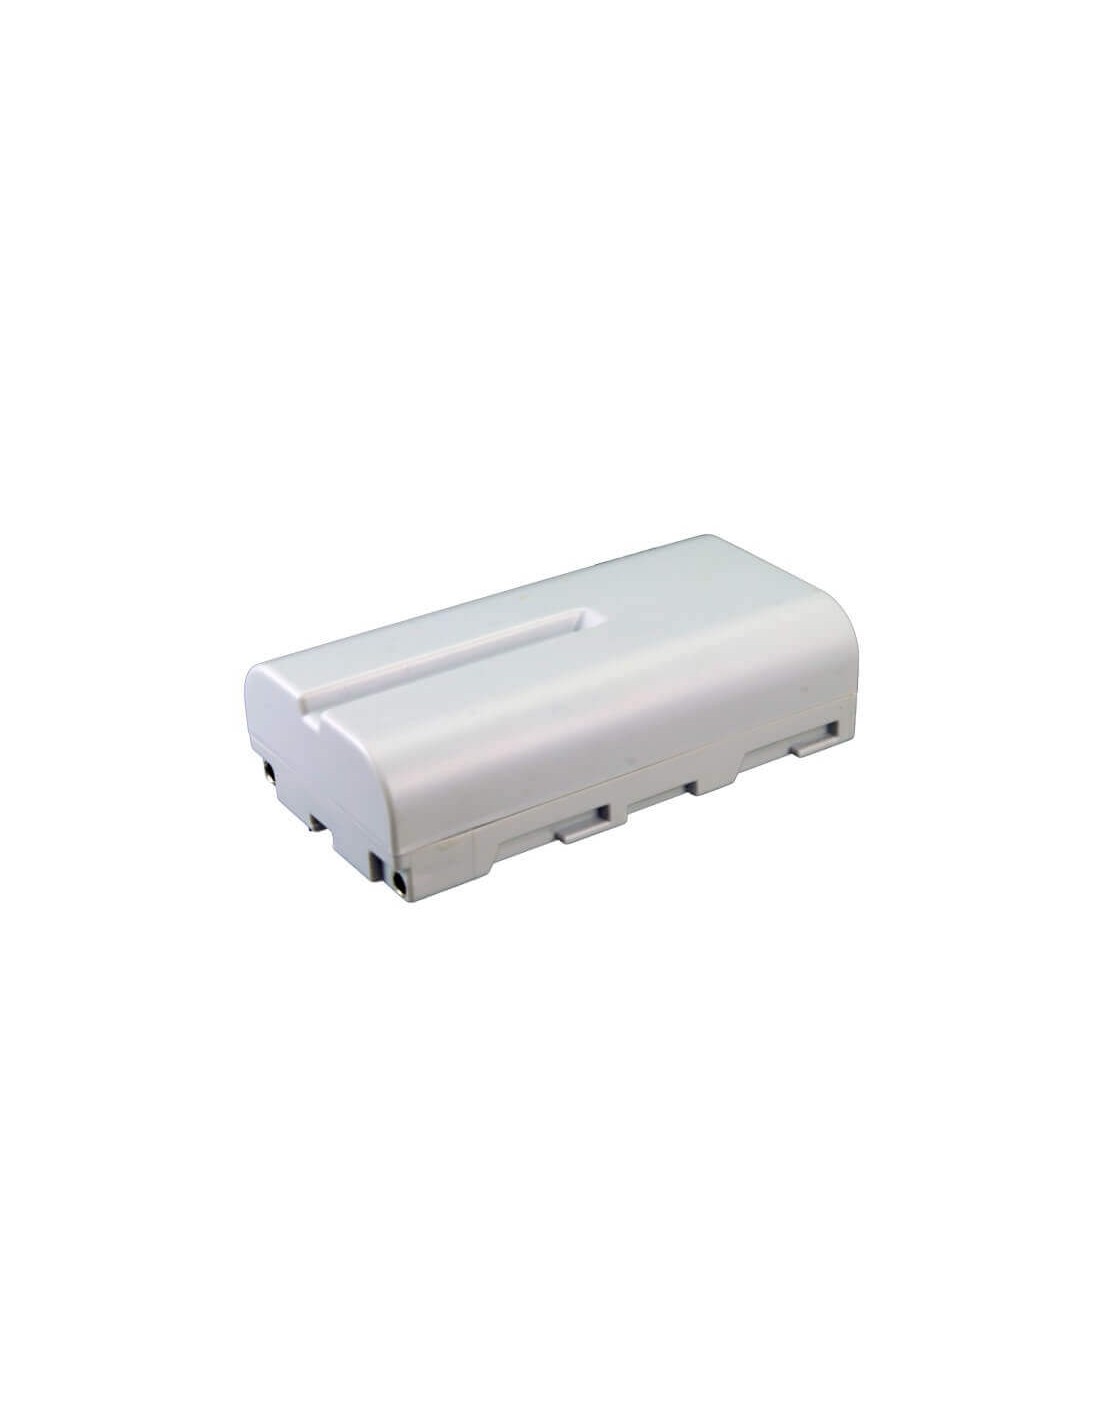 Battery for Graphtec Gl220 Data Logger 7.4V, 2200mAh - 16.28Wh